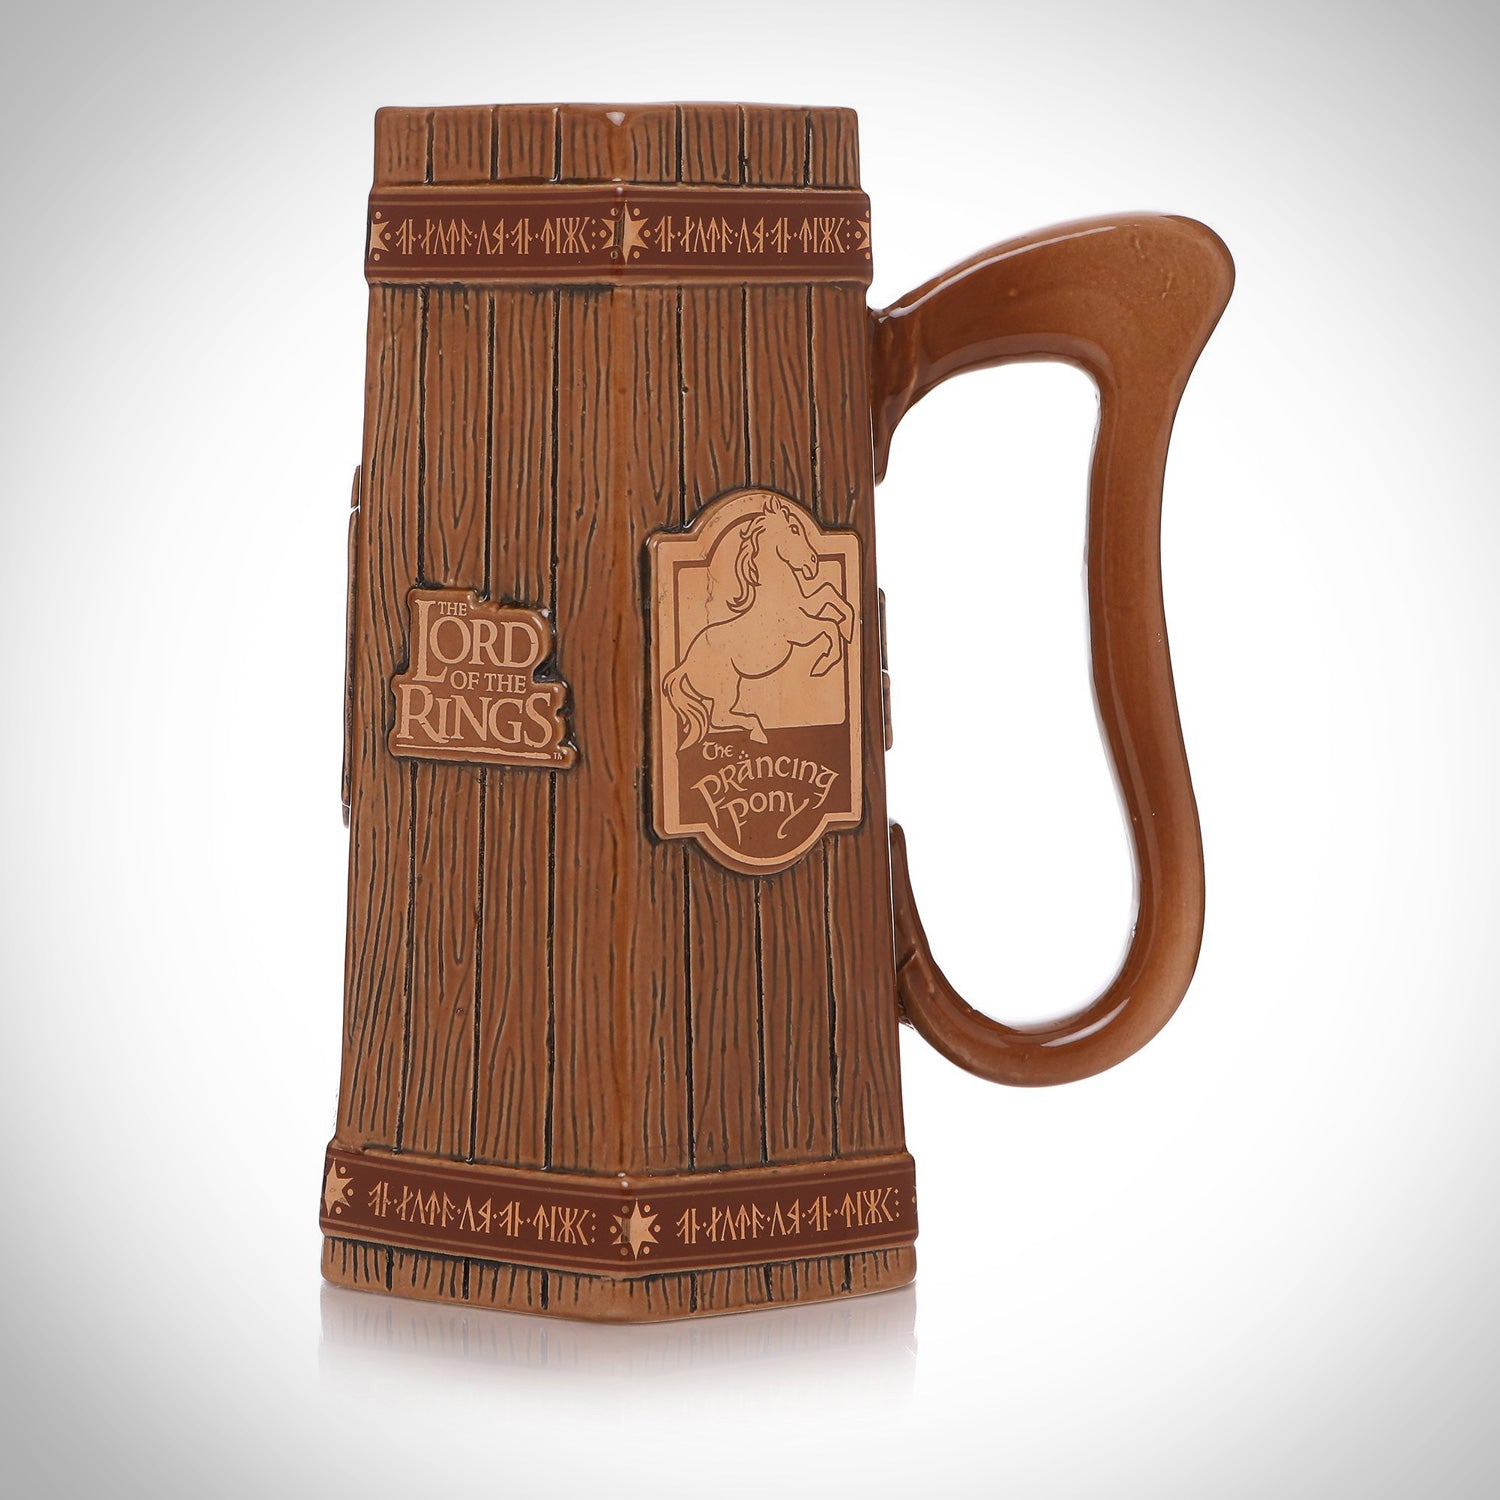 Prancing Pony Mug, Lord of the Rings Mug, Wooden Beer Mug, Tankard